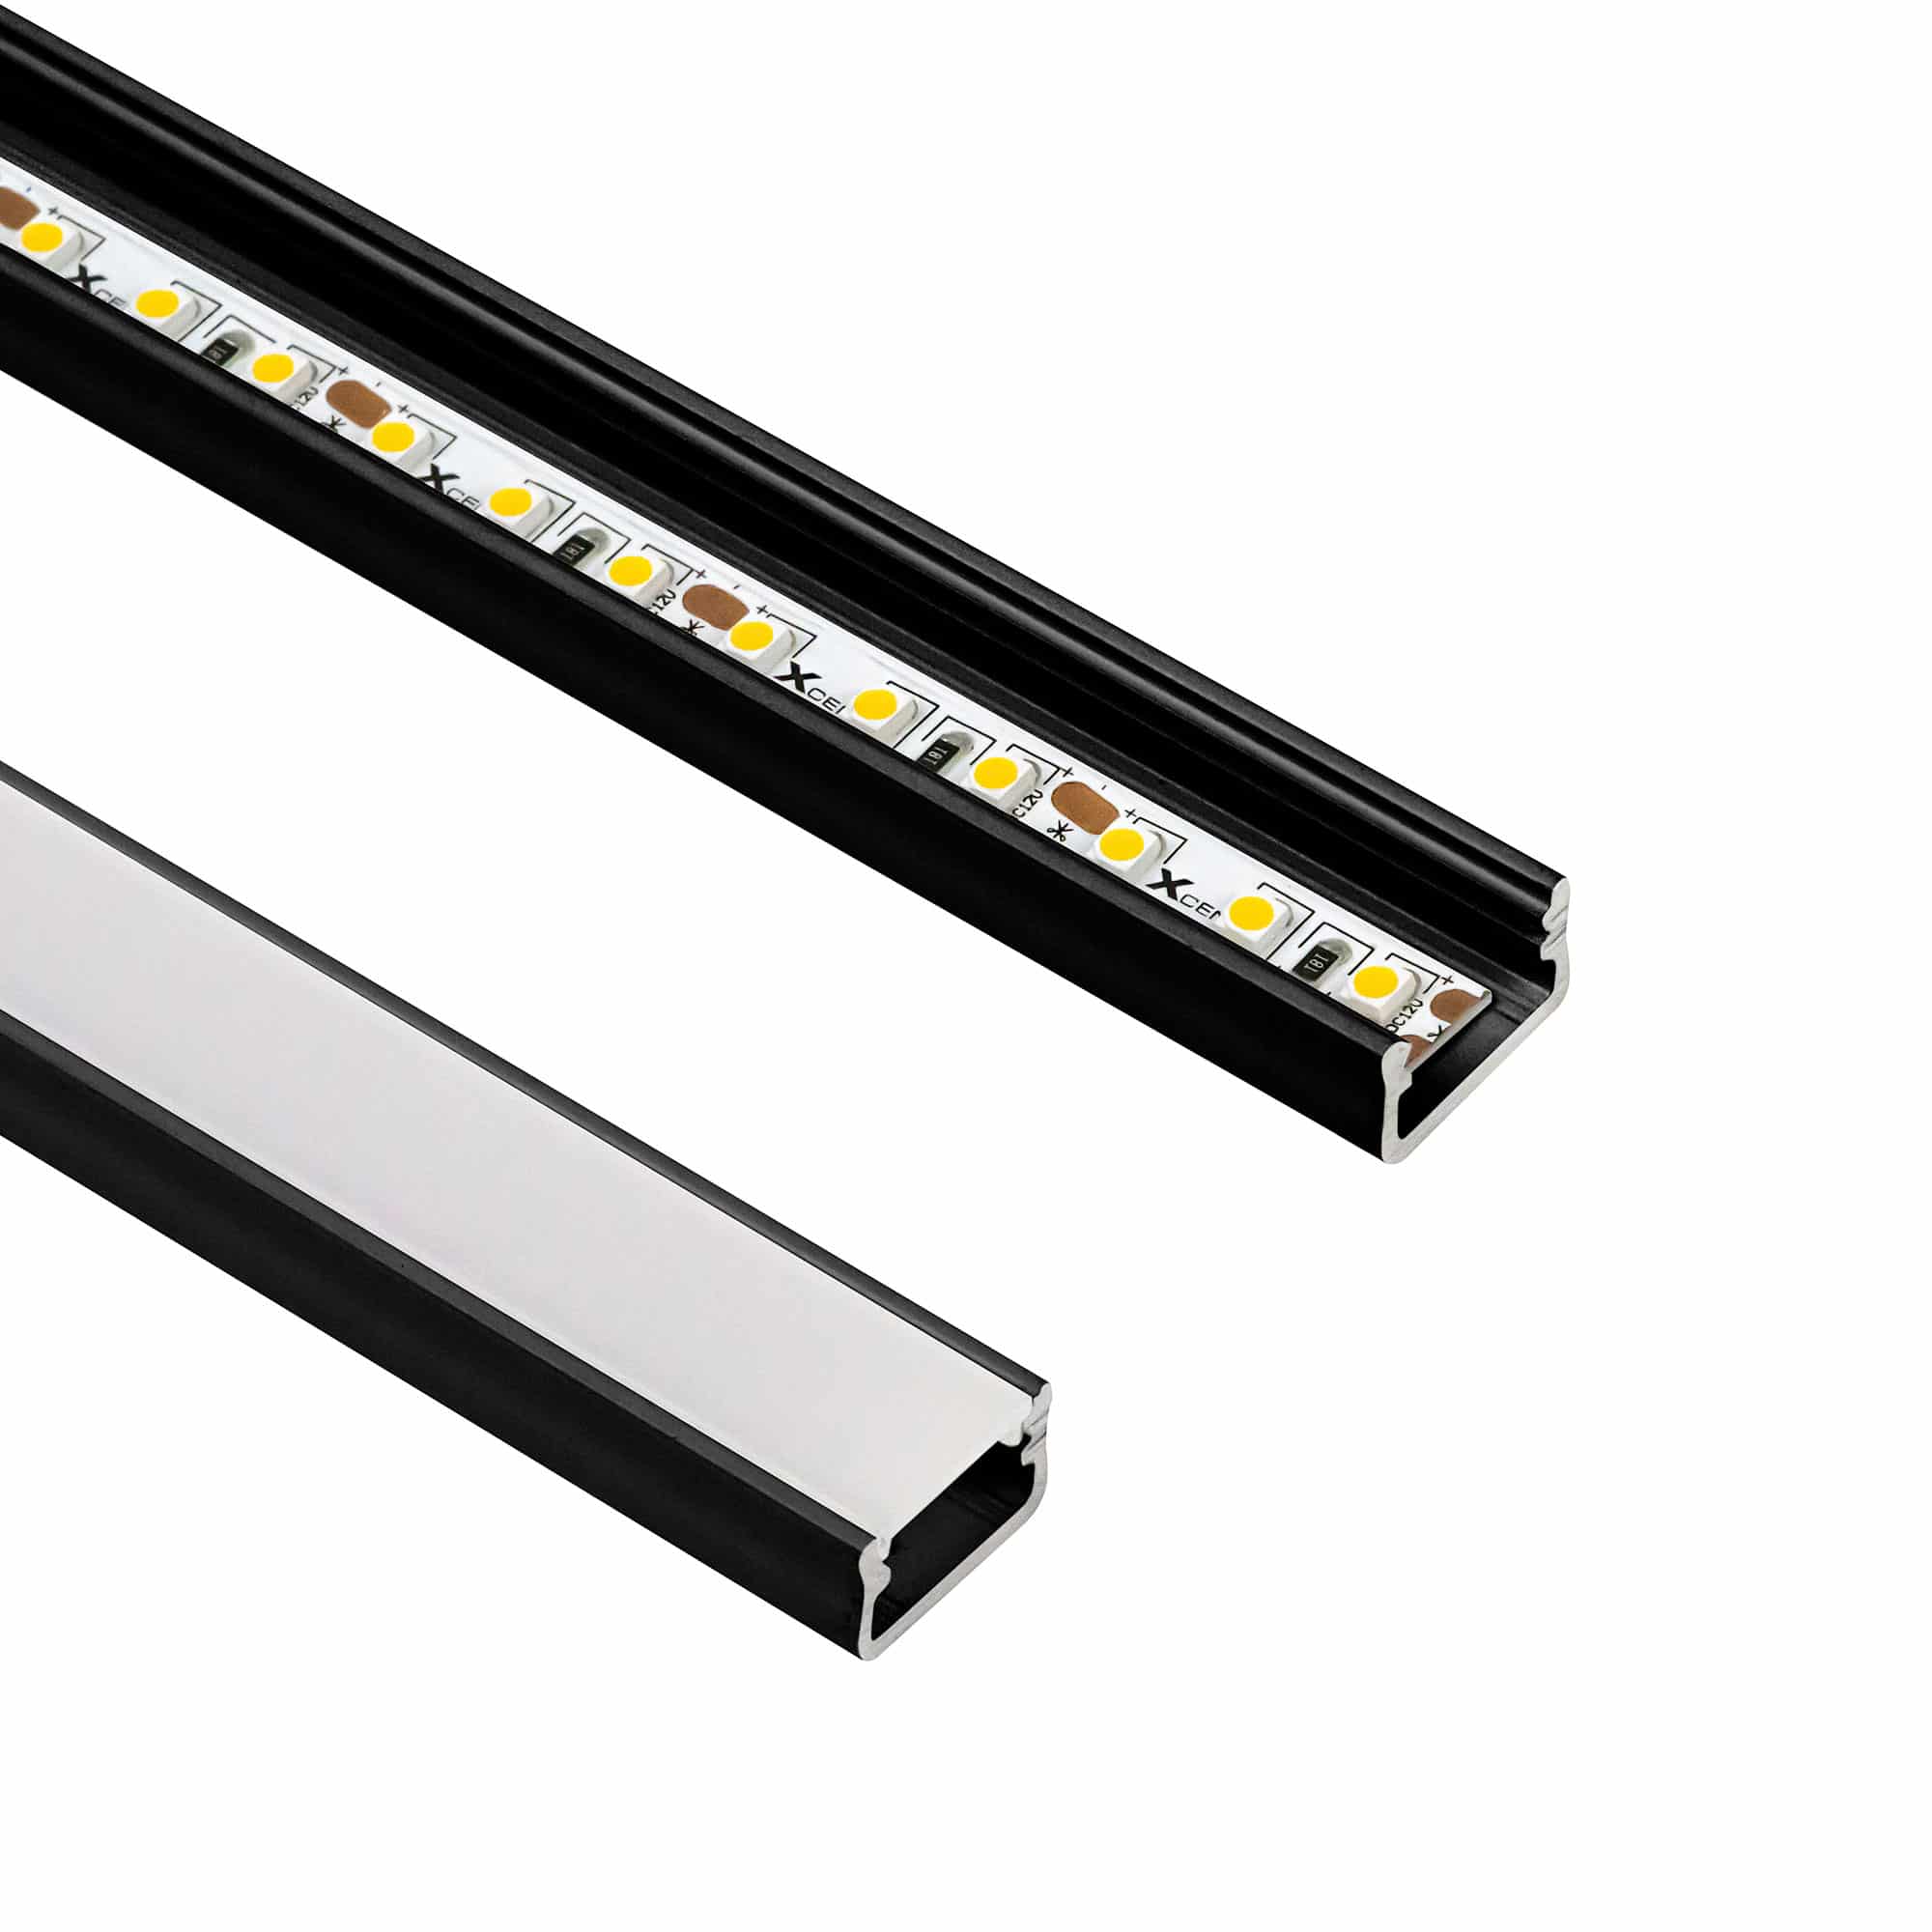 Dimmable LED lighting strips - 24V - WallRibbon